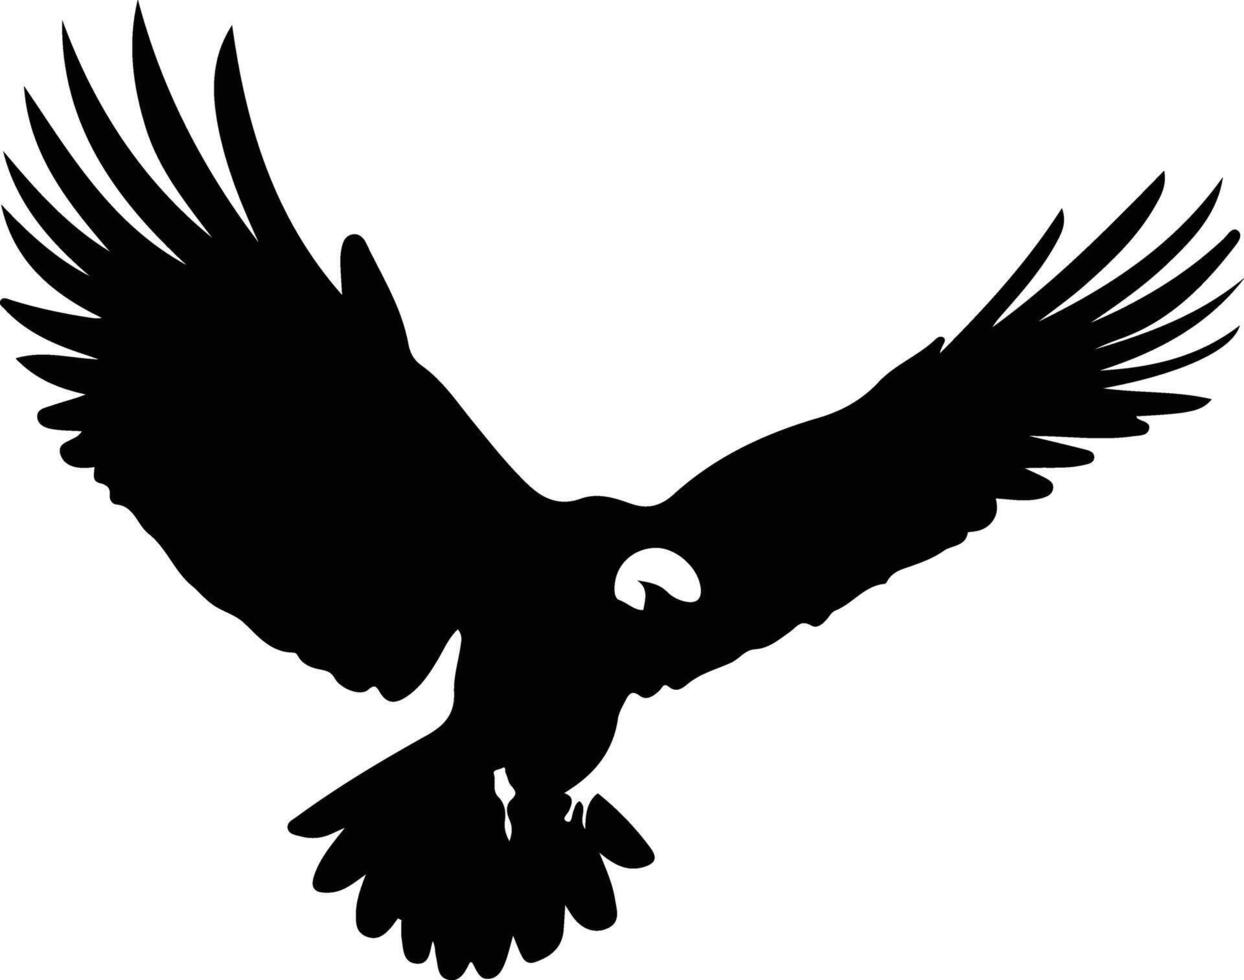 avvoltoio nero silhouette vettore